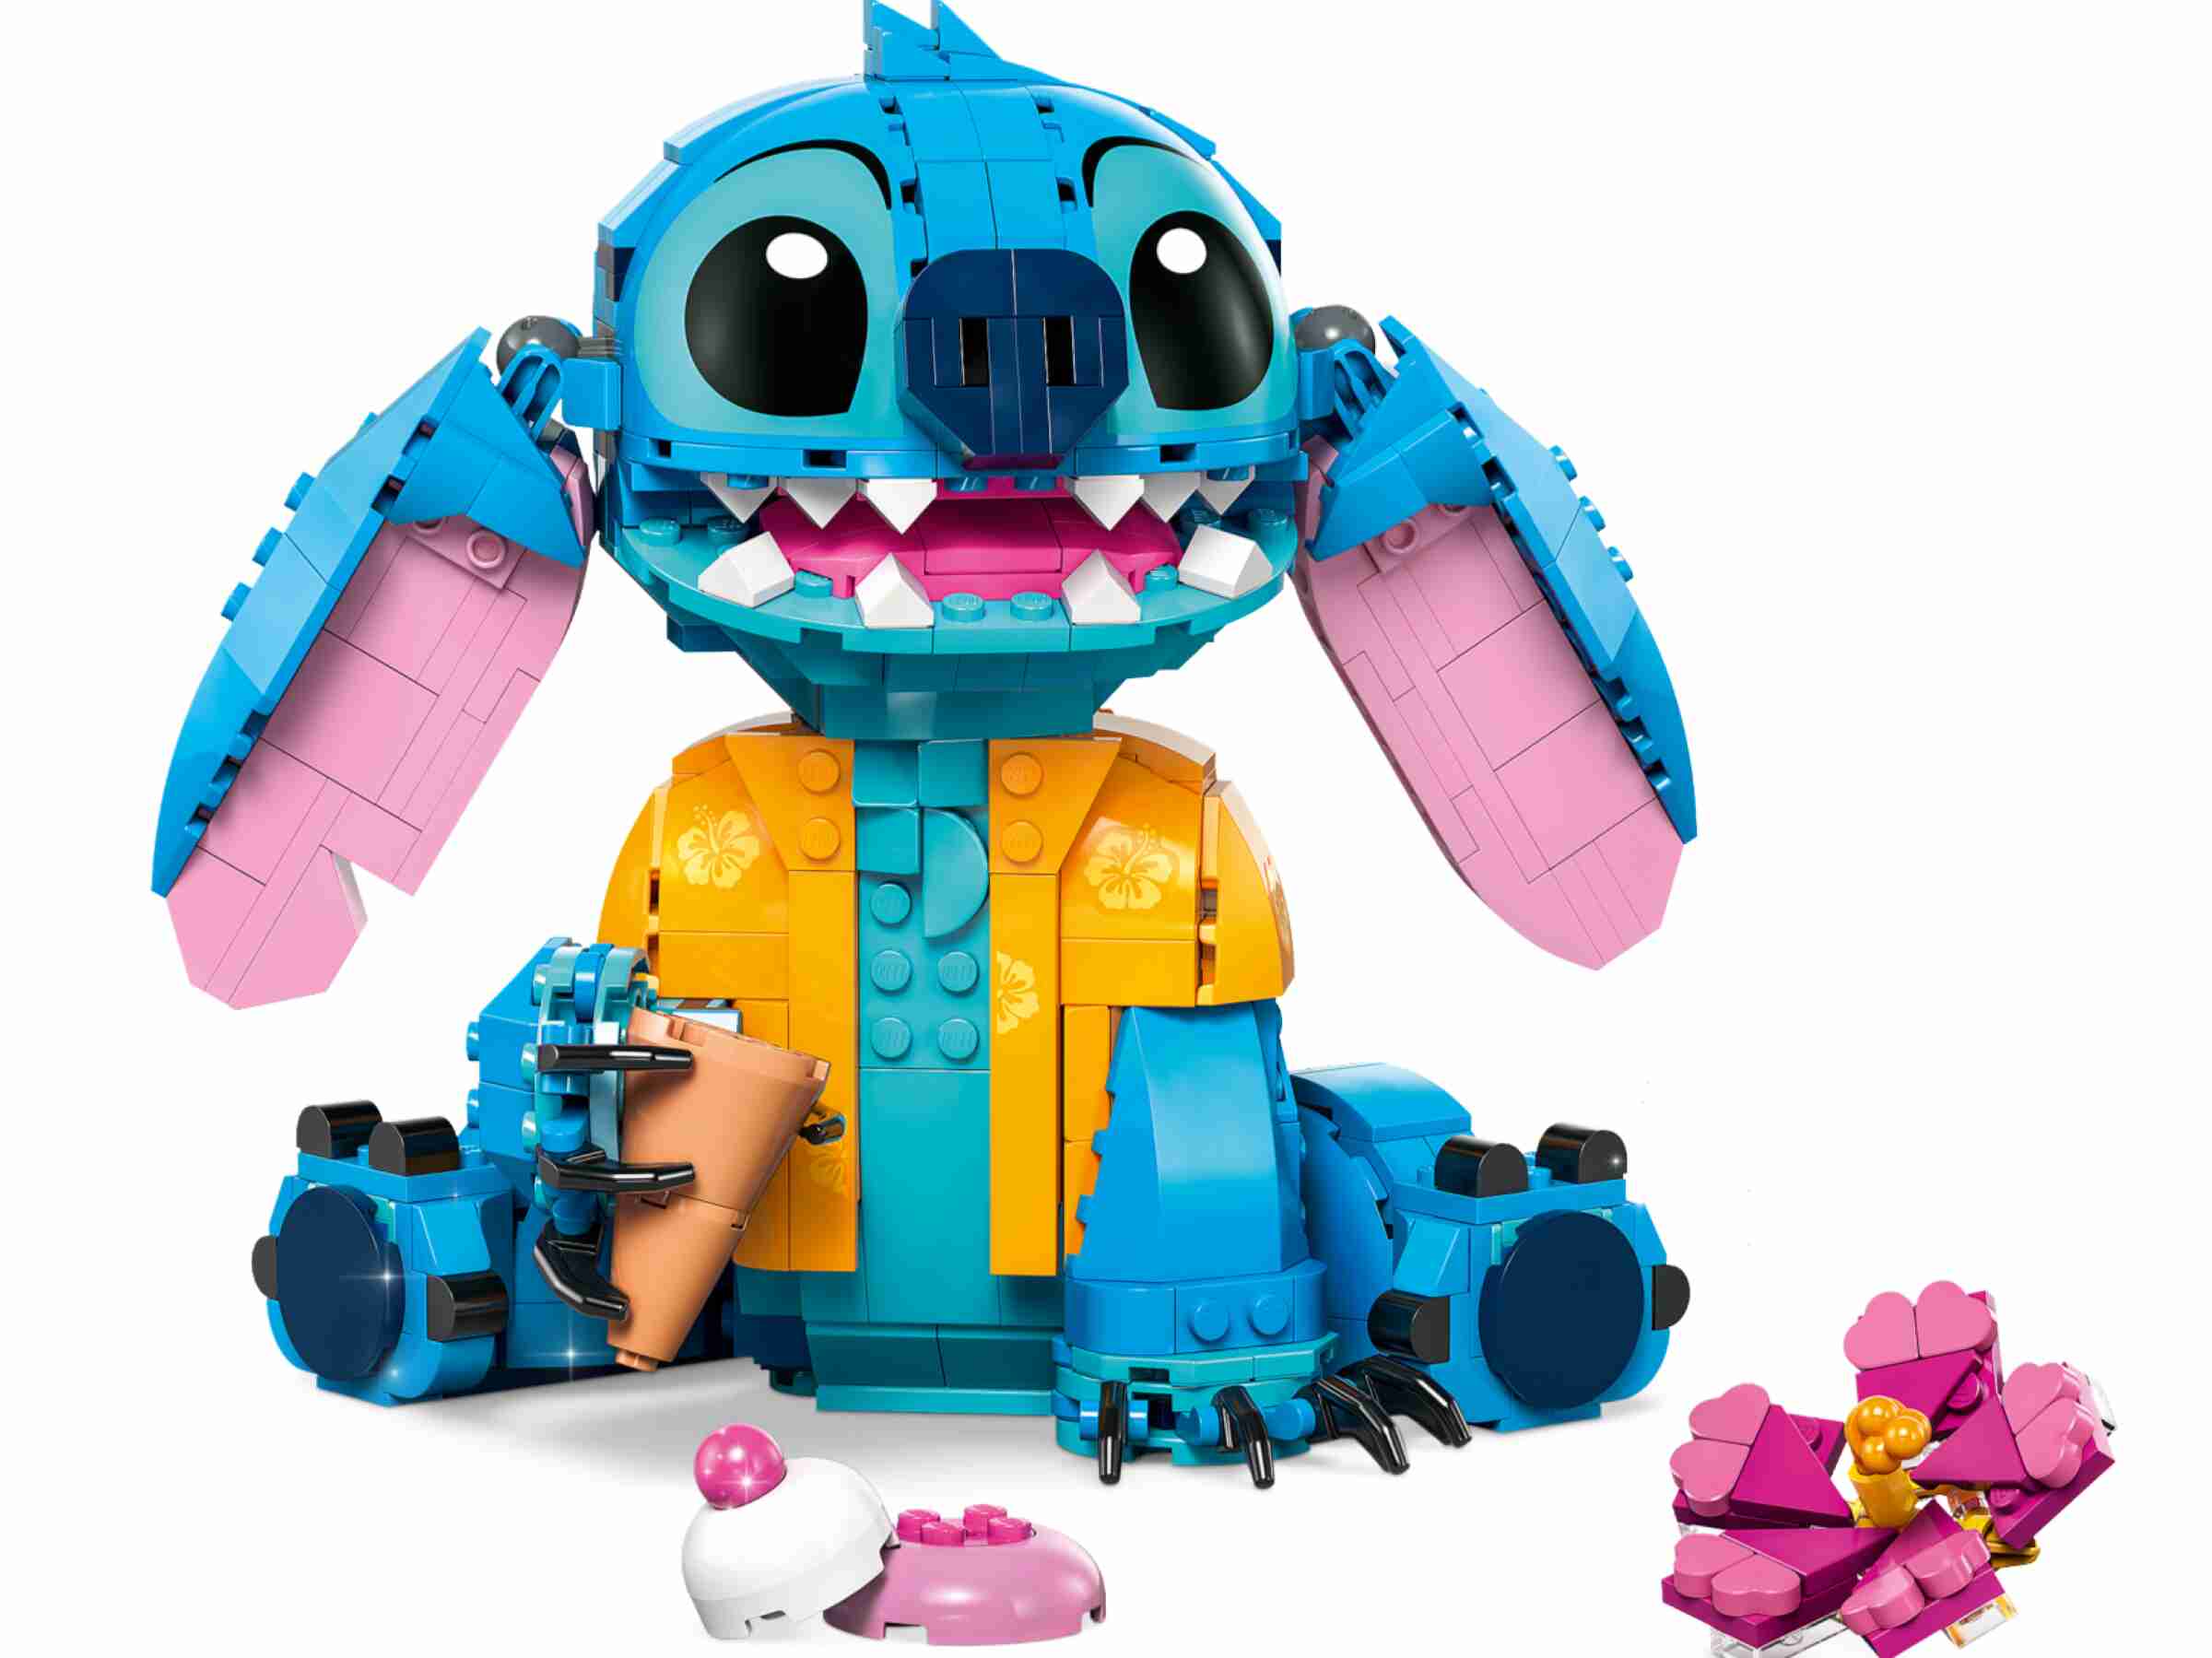 LEGO 43249 Disney Stitch, Eiswaffel, Blume, beweglicher Kopf und Ohren